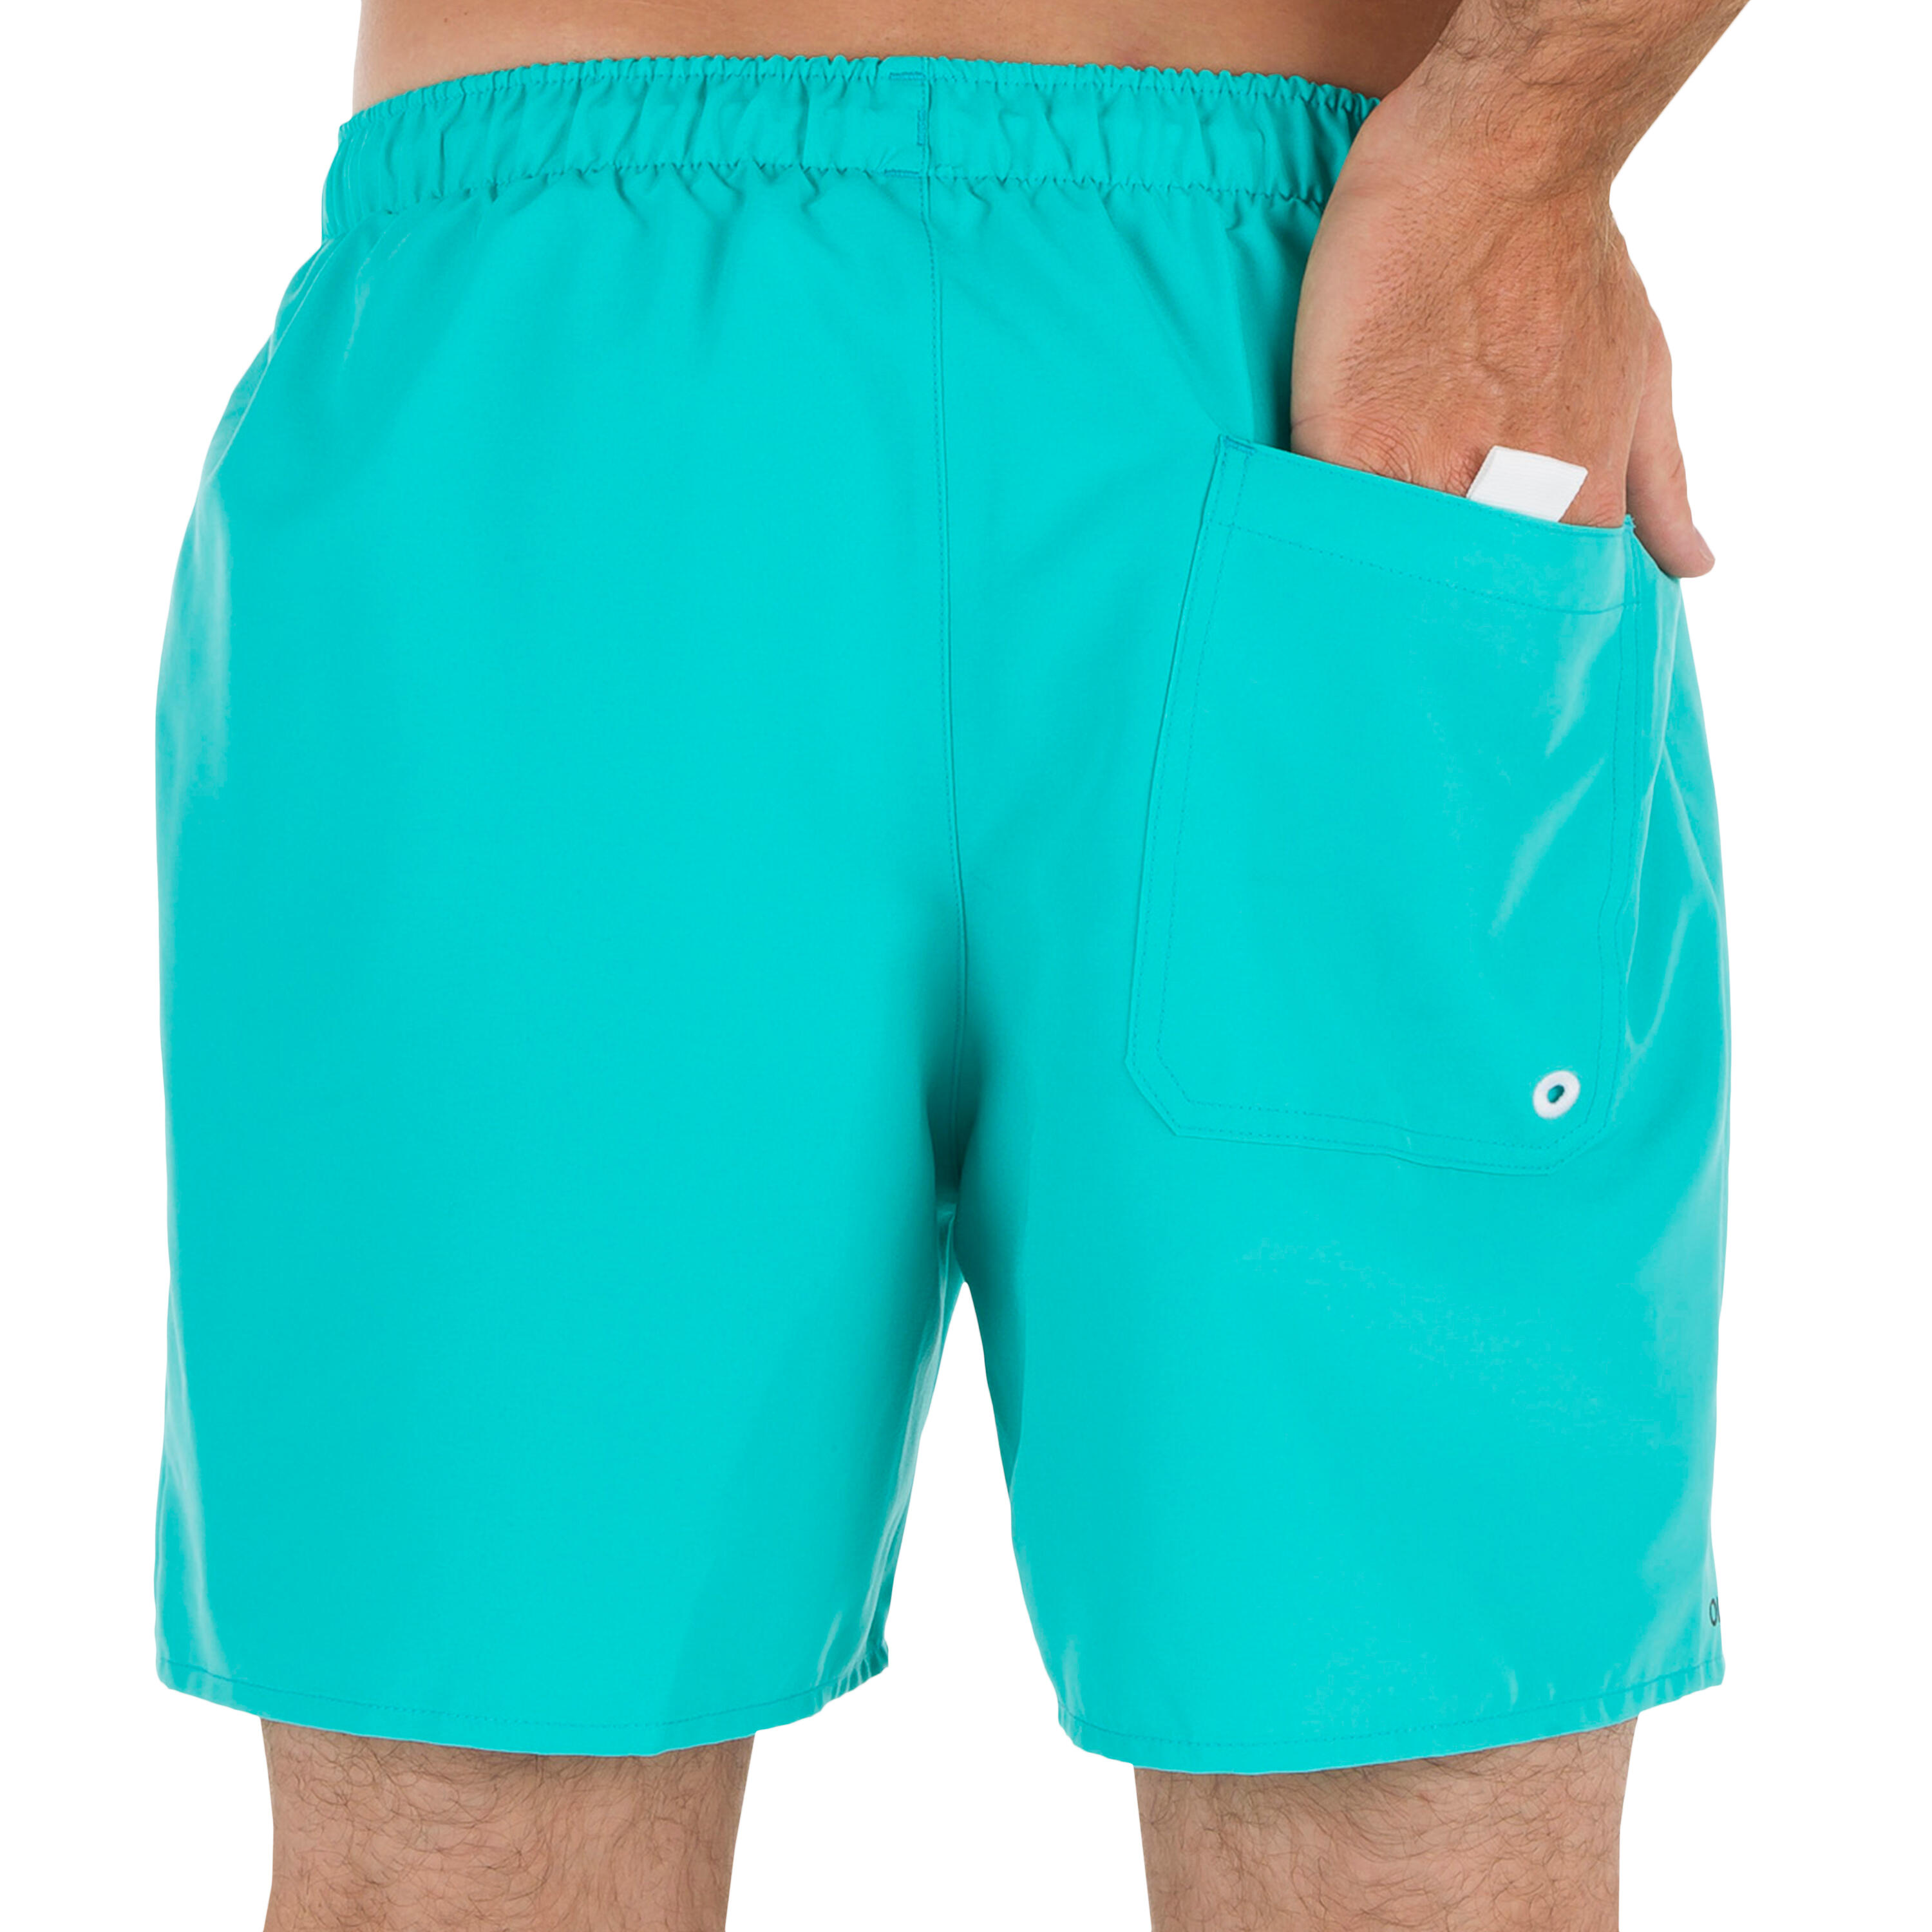 Hendaia Short Boardshorts - NT Turquoise 4/5